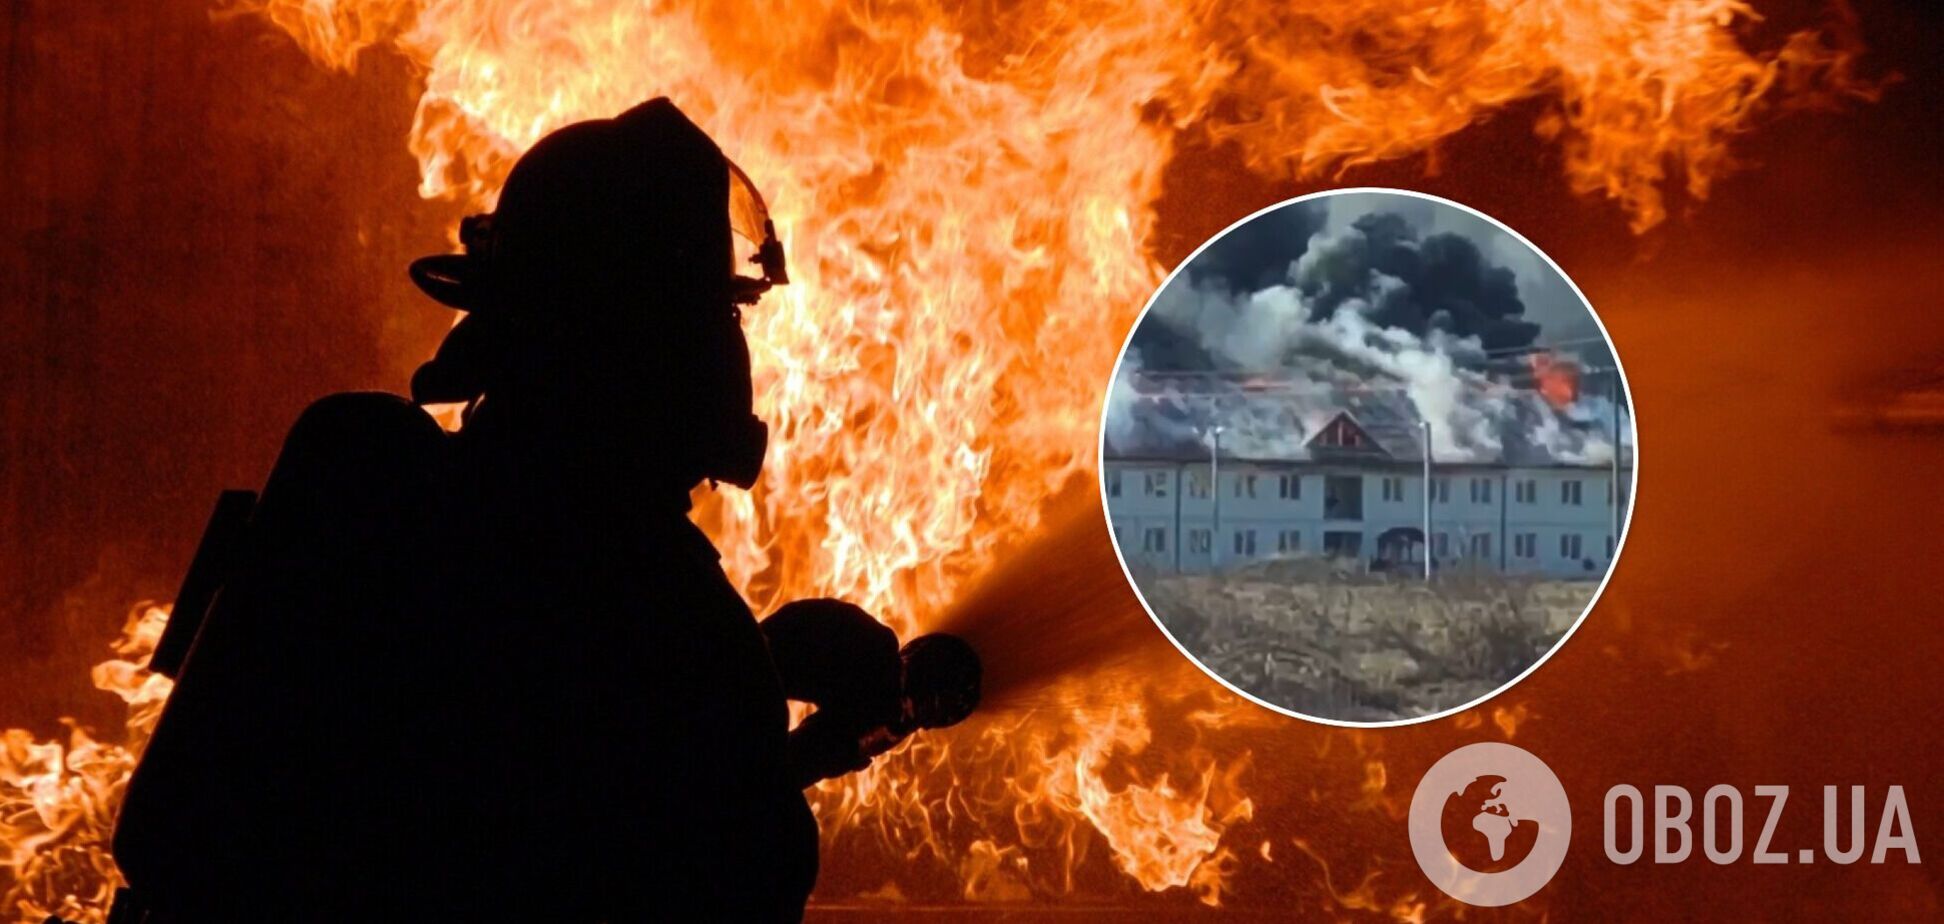 На Закарпатті спалахнув ЖК за 120 млн грн: відео масштабної пожежі